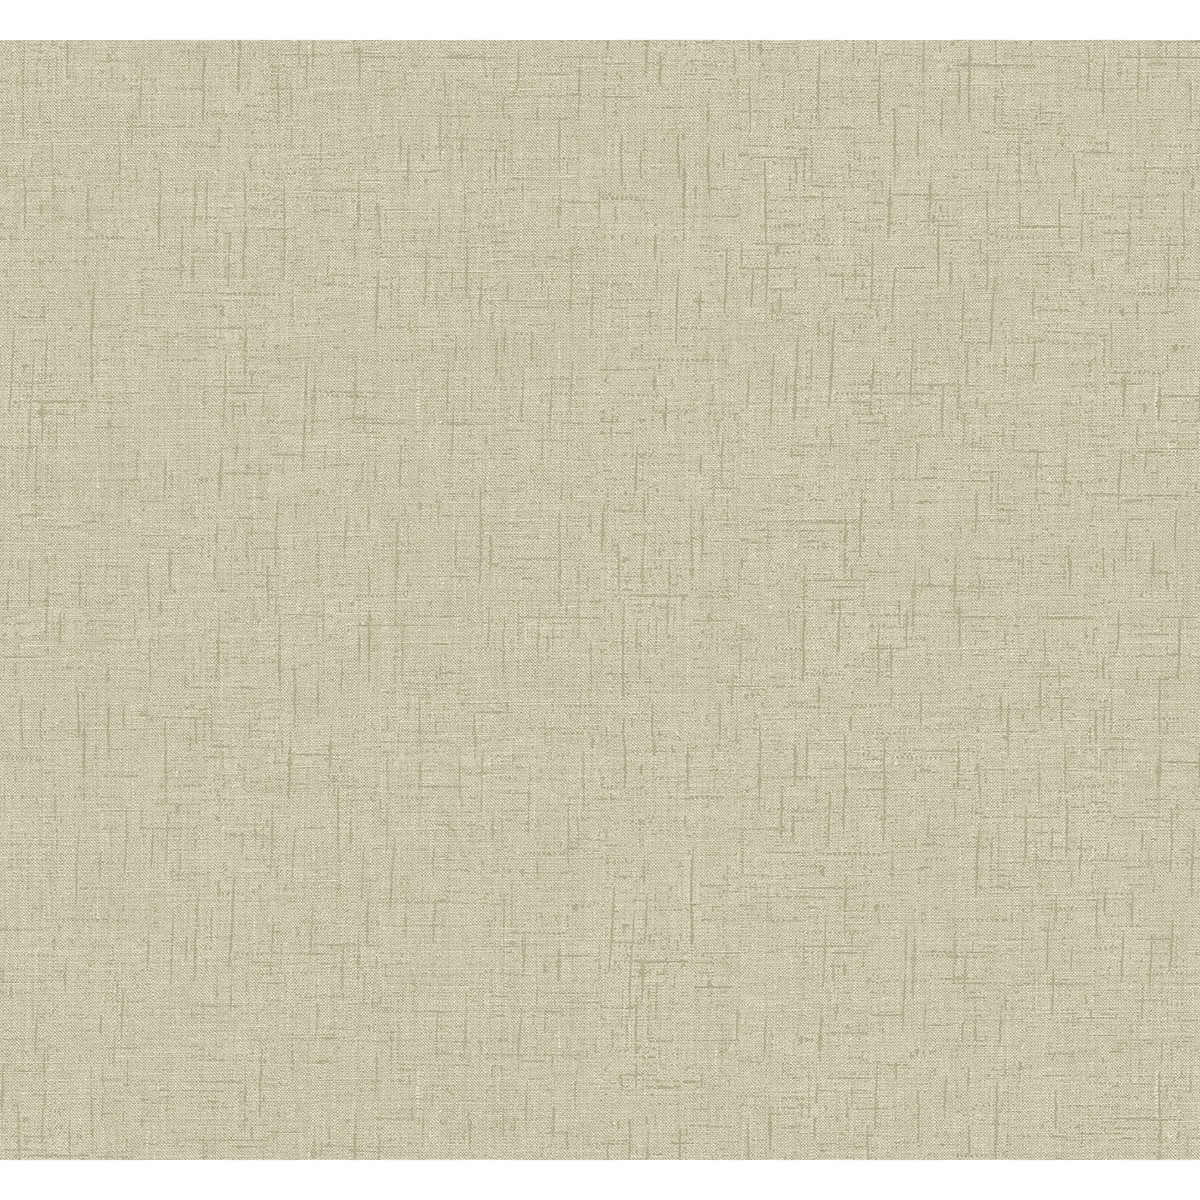 2973-90916 - Bentley Beige Faux Linen Wallpaper - by A-Street Prints